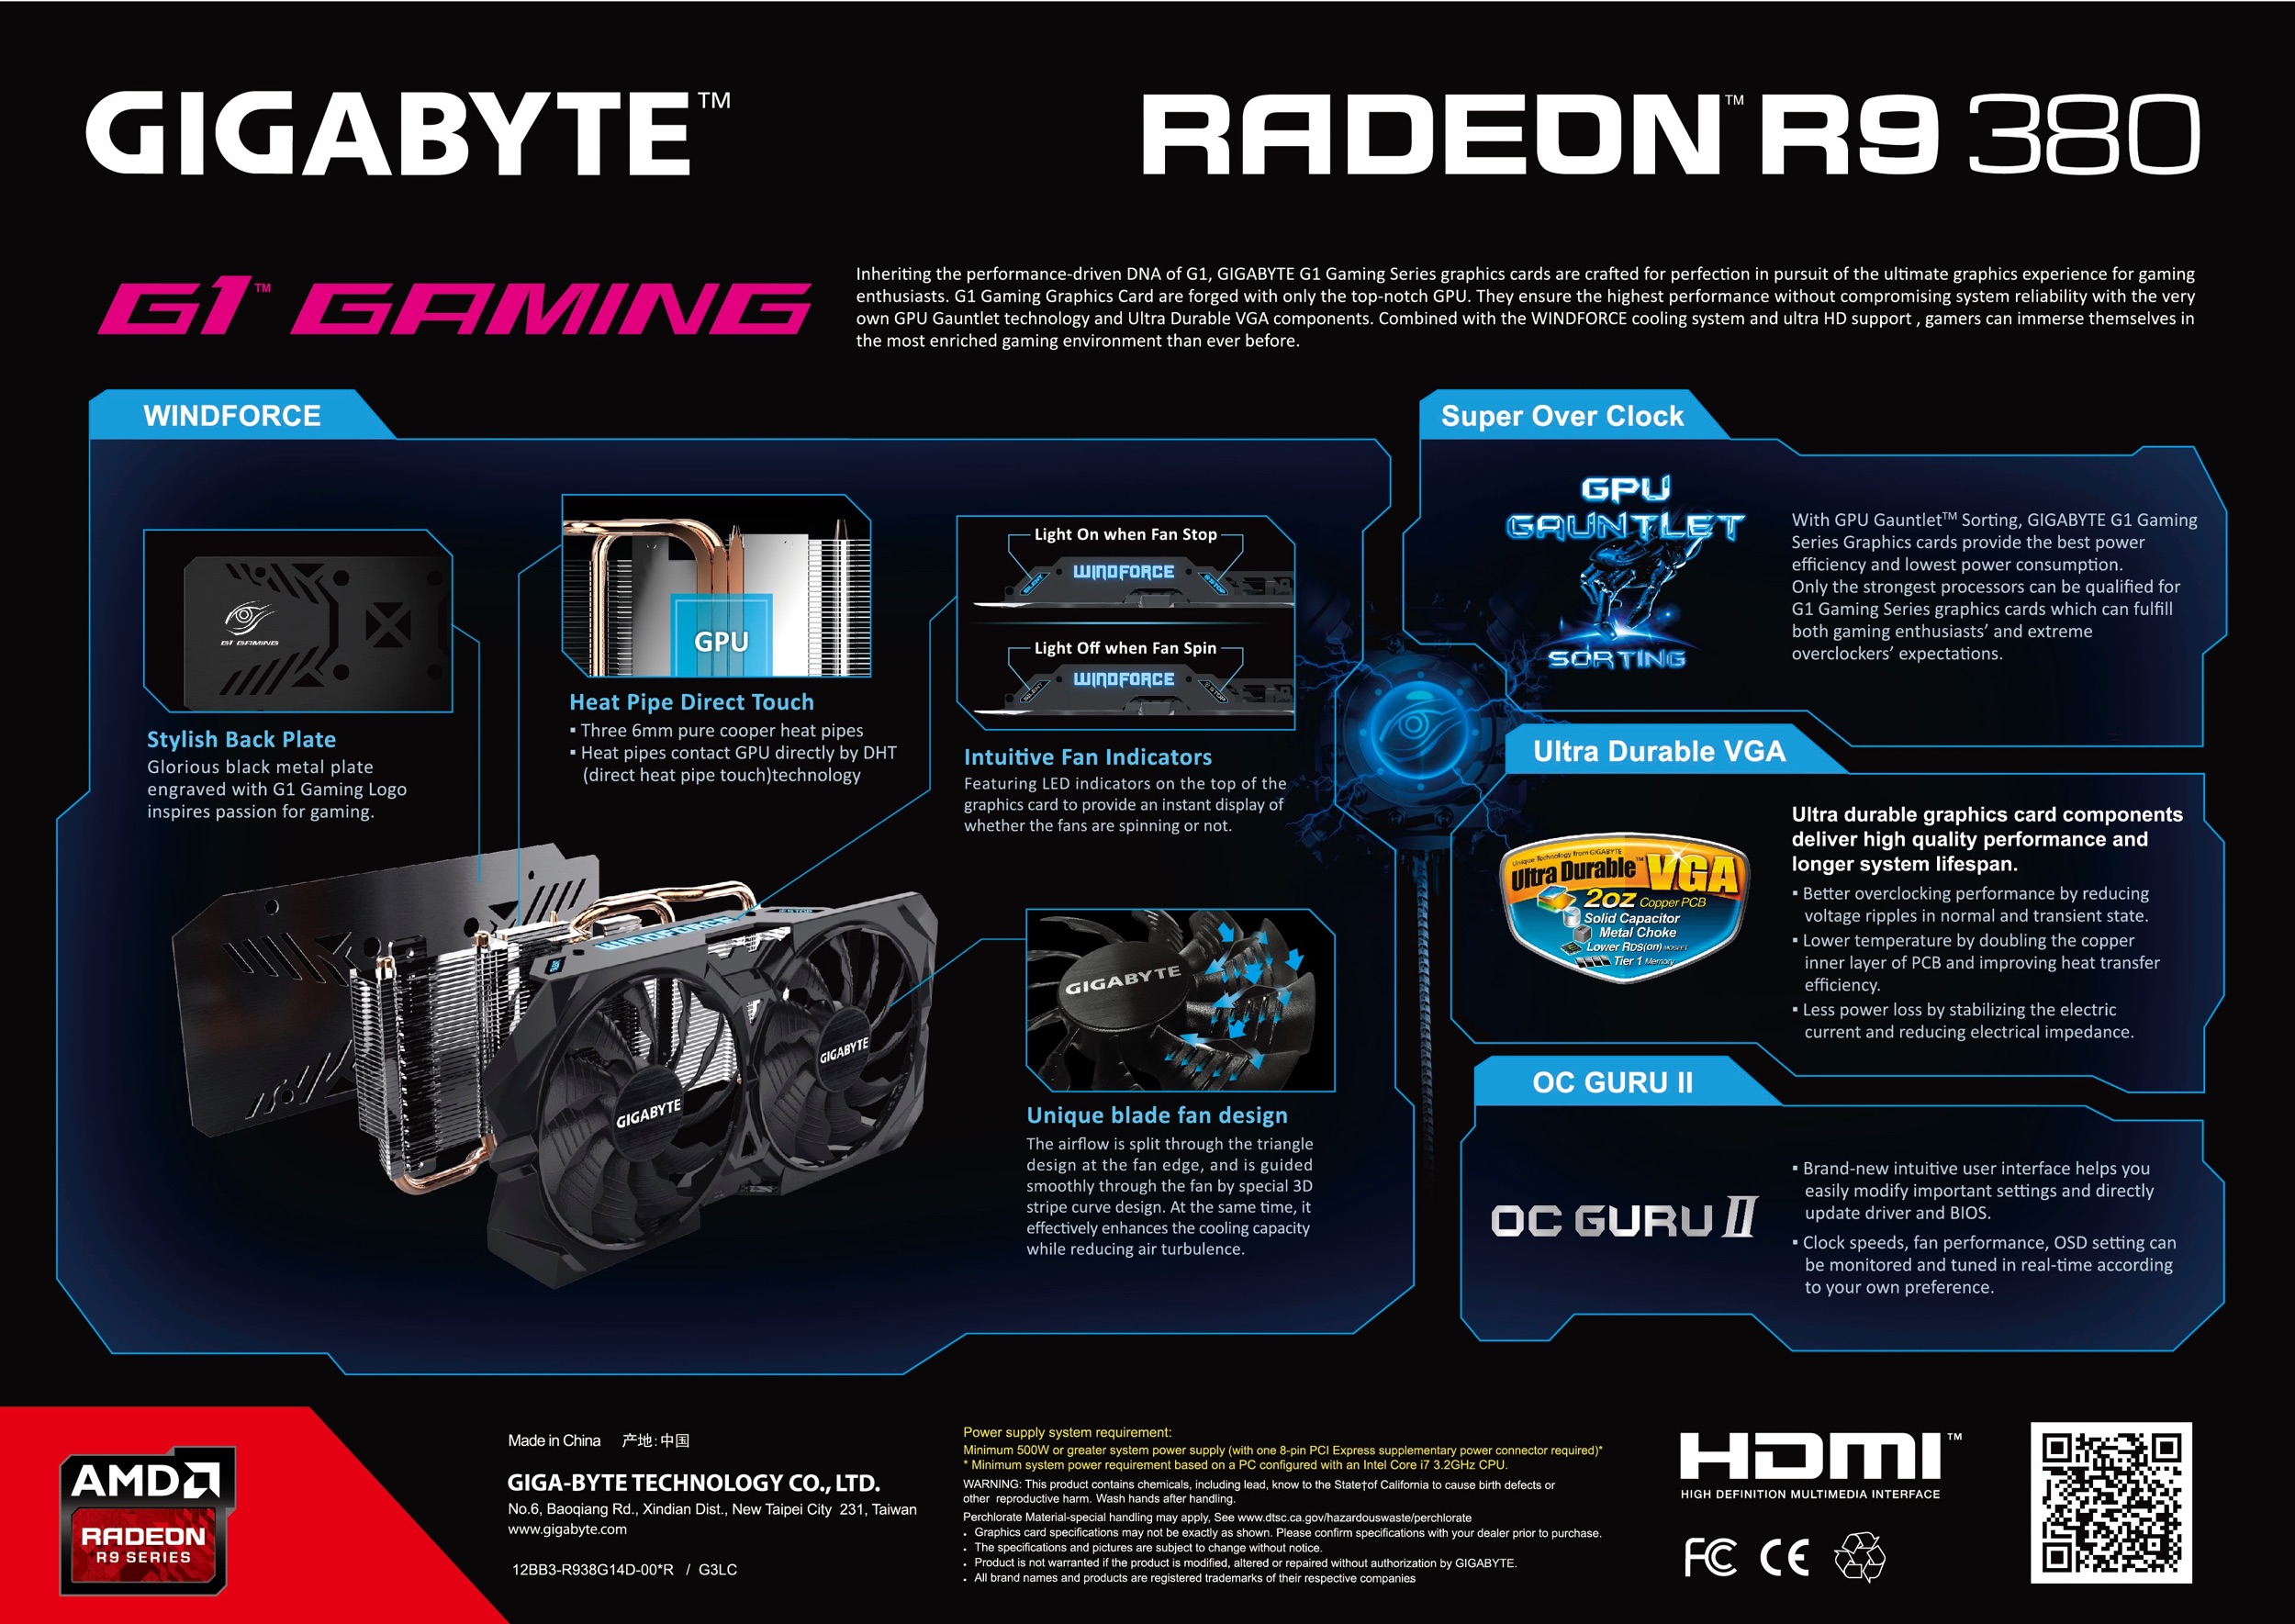 gigabyte-leak-380-2.jpeg : Gigabyte Radeon R9 380 G1 Gaming